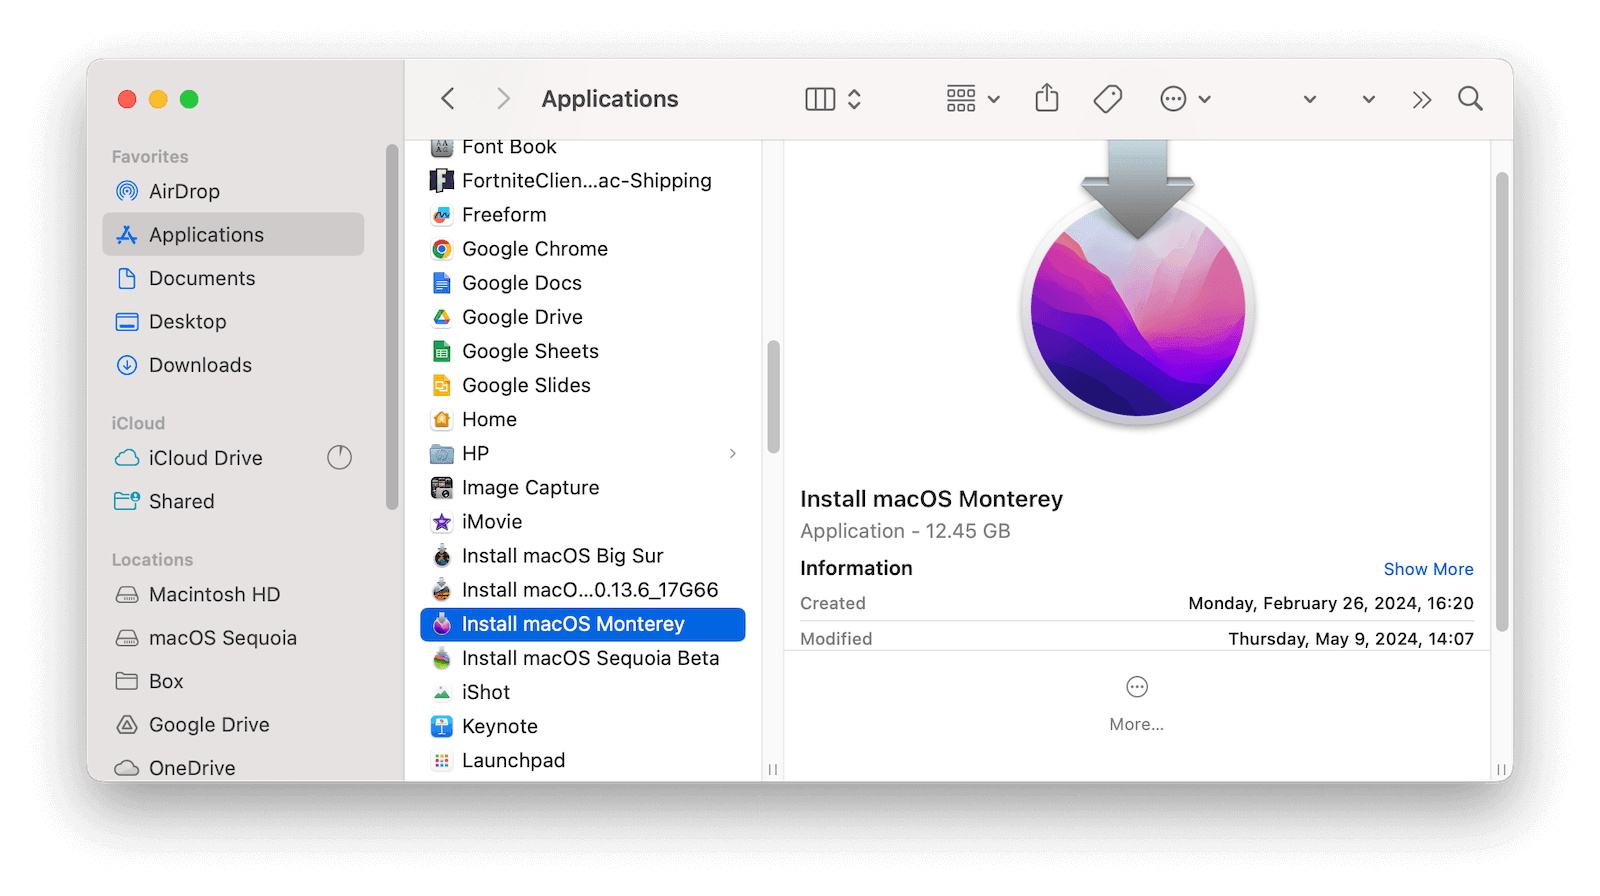 Install macOS Monterey App in Application Folder